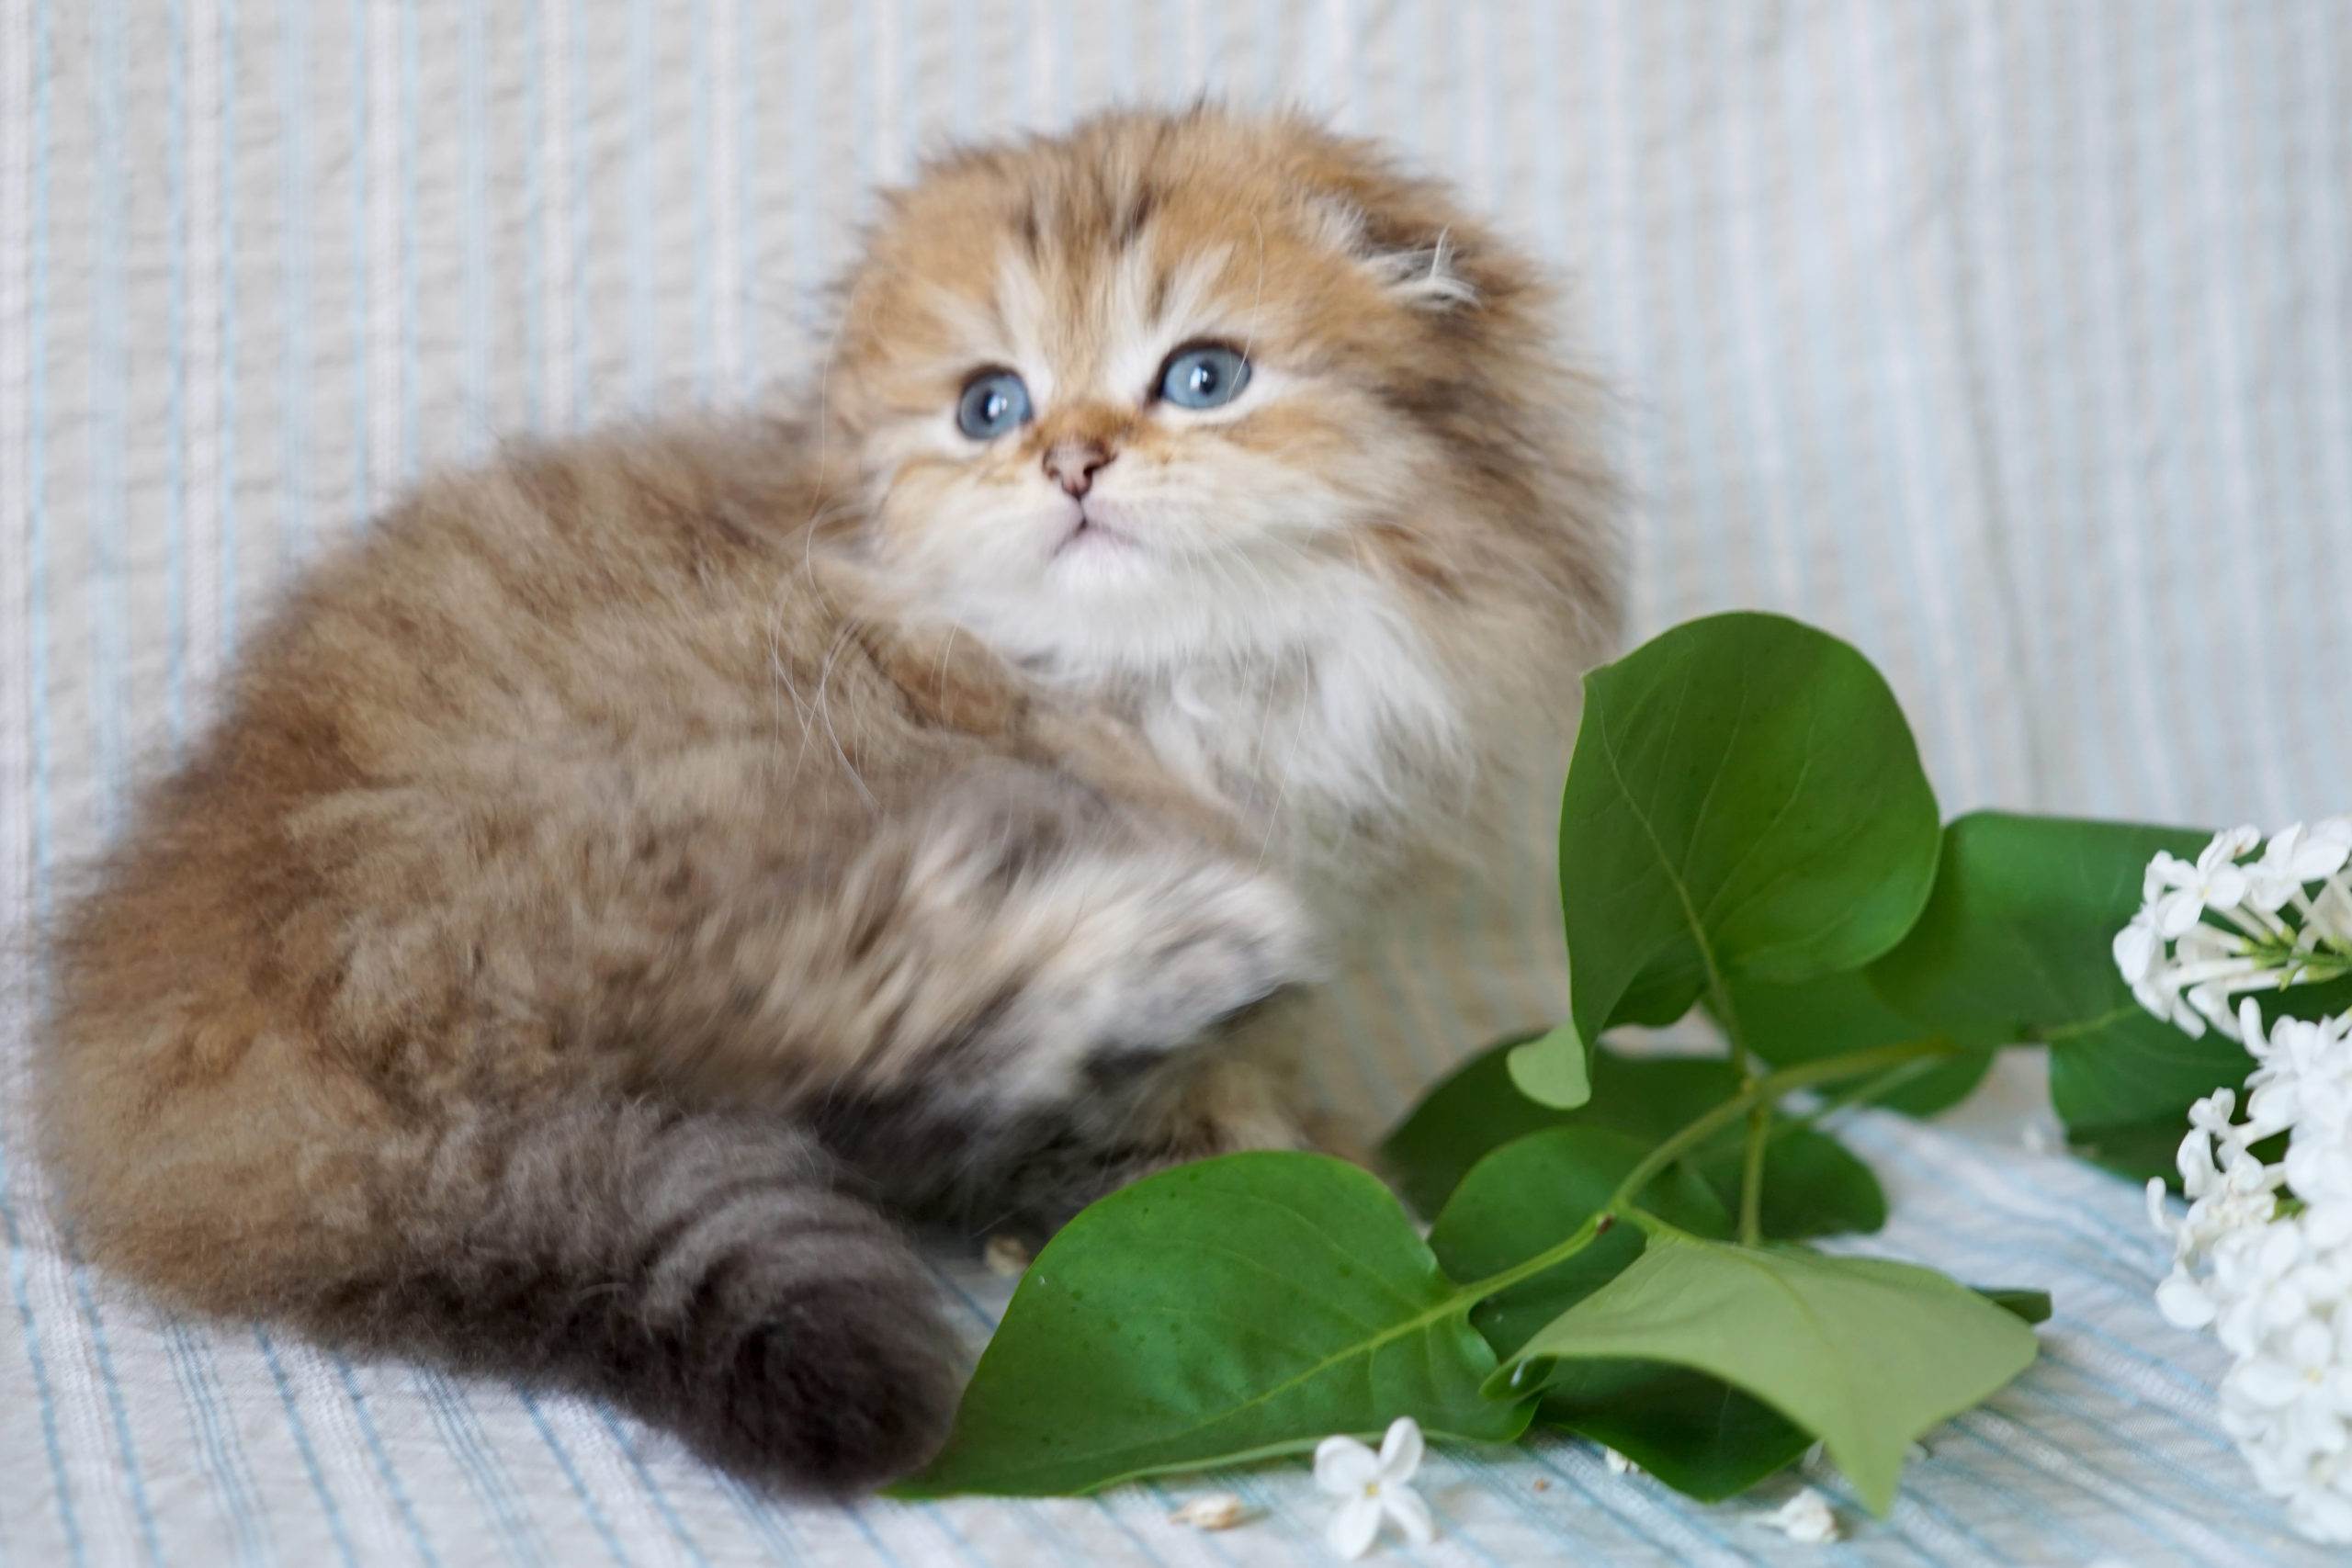 Шотландская вислоухая кошка - 4 признаки породы, фото, описание, характер